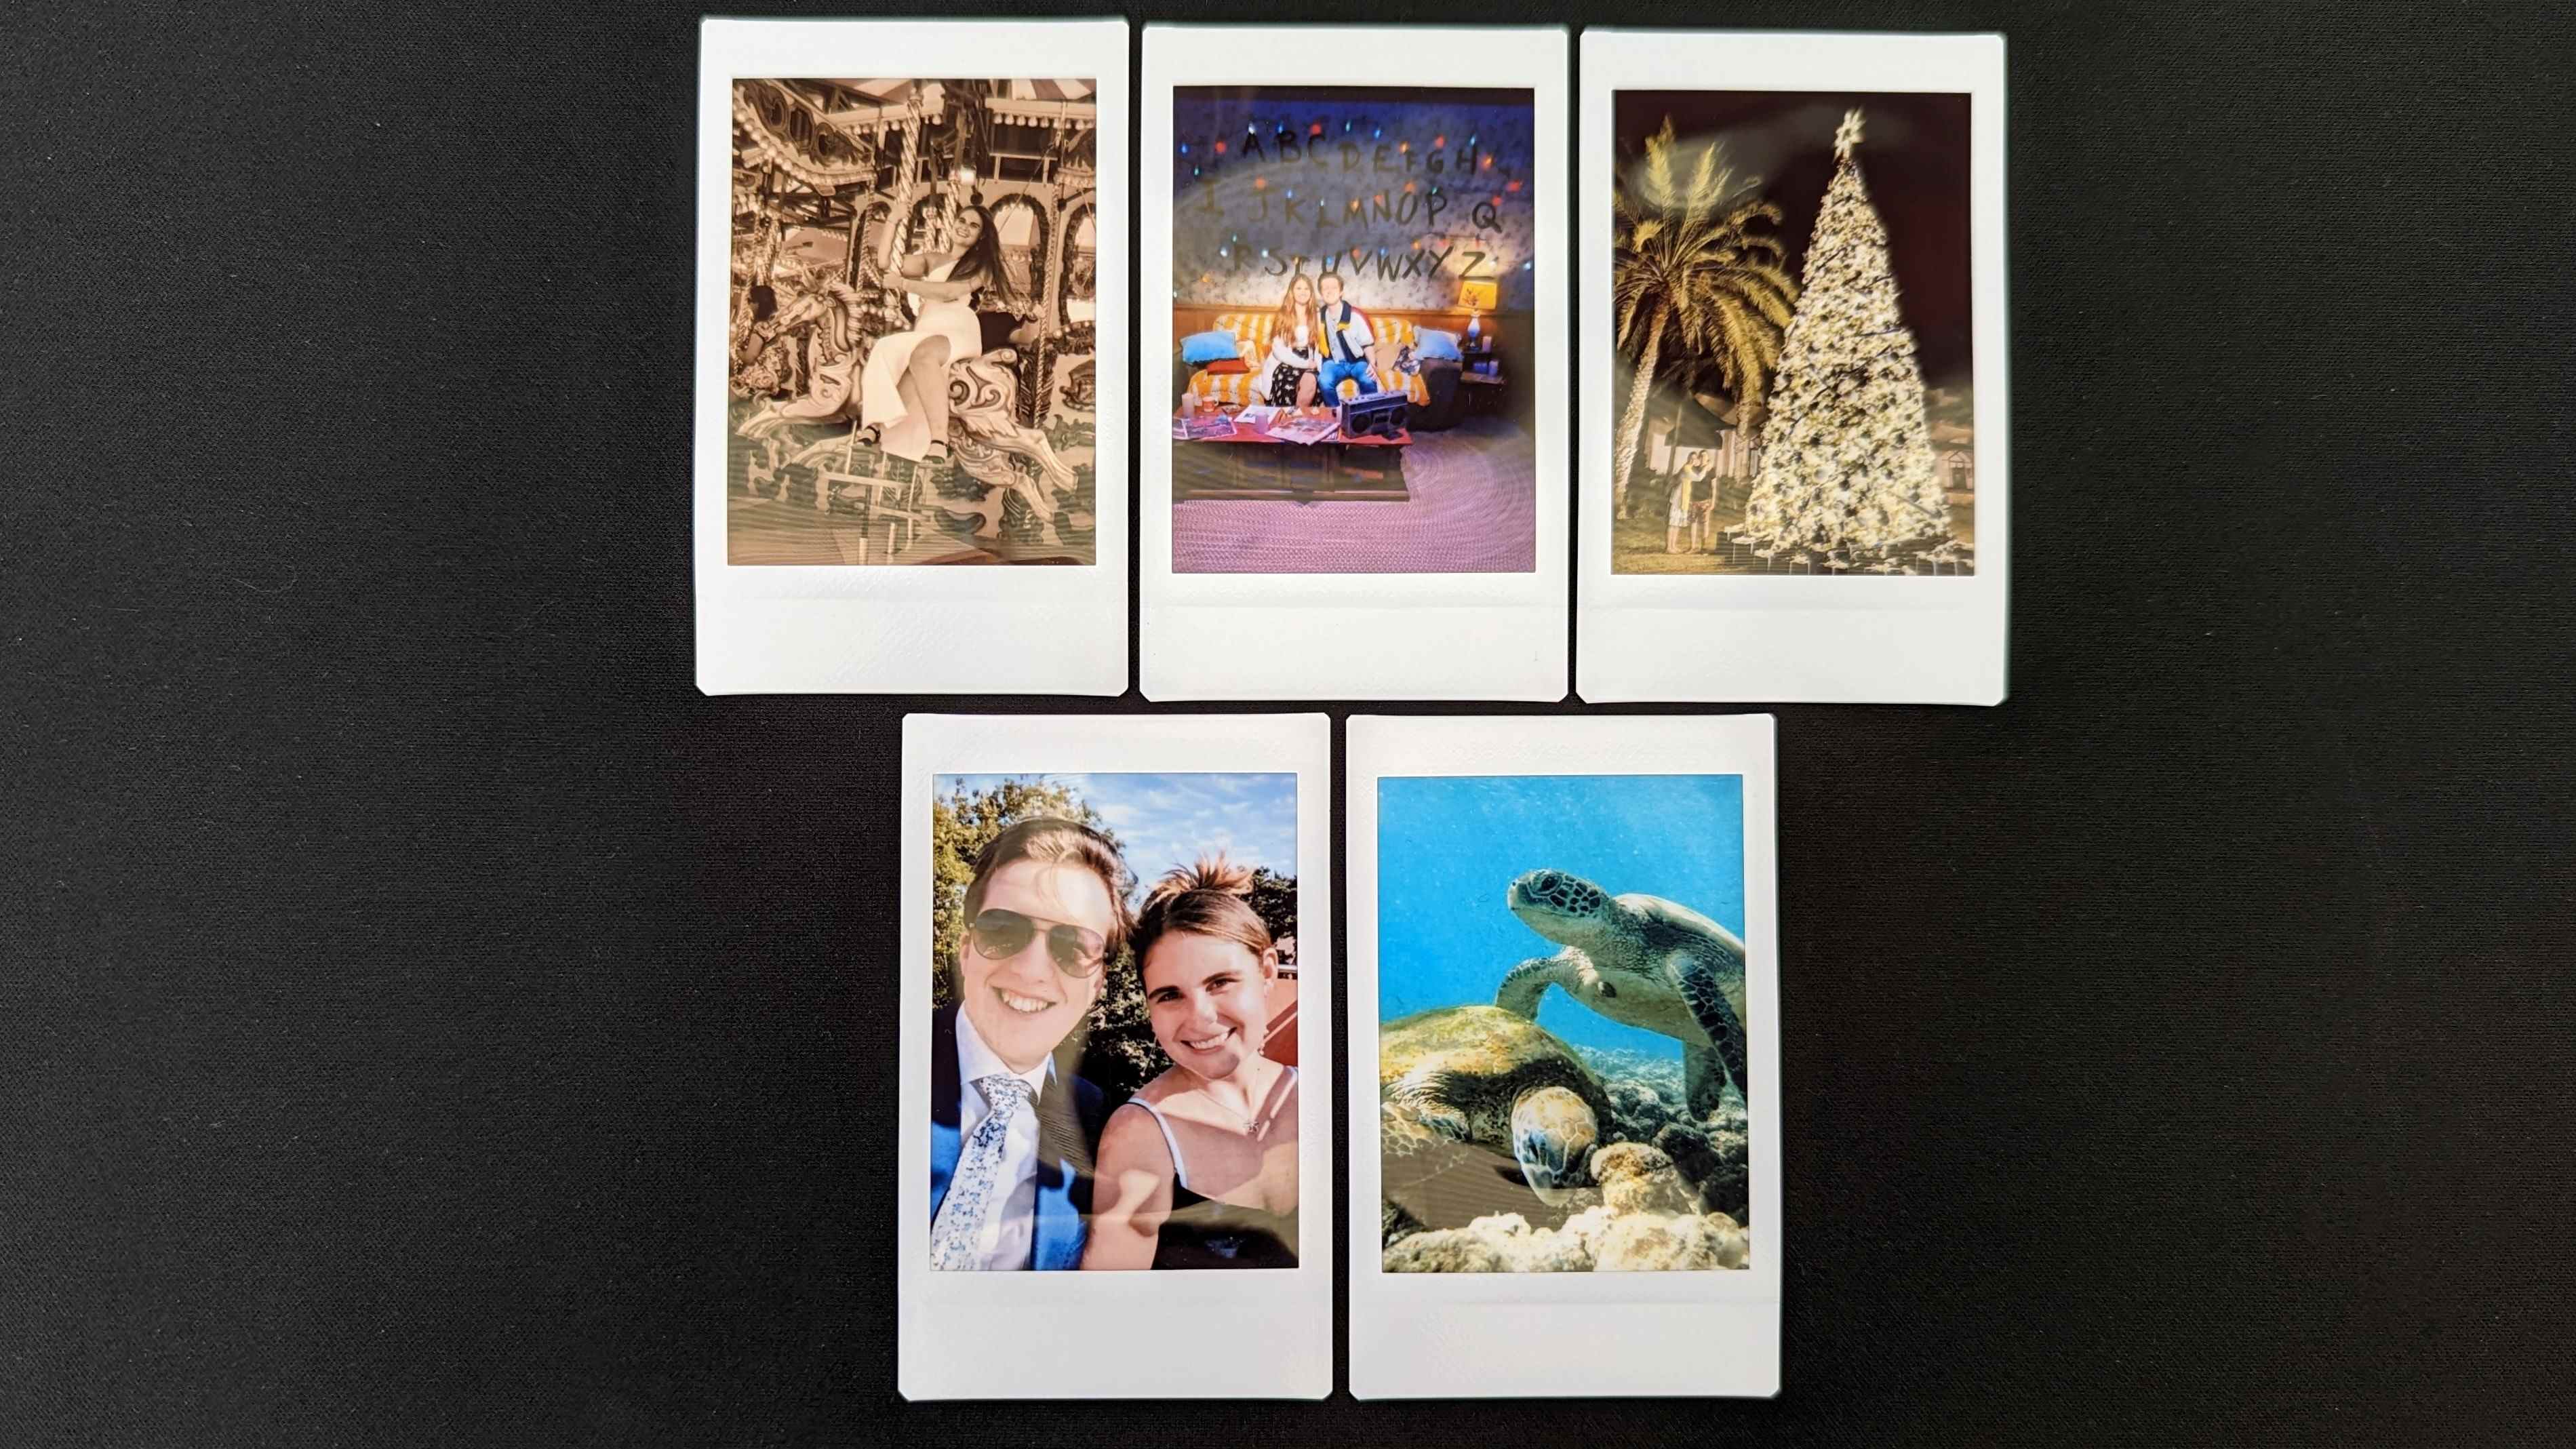 Photos prises avec l'Instax Mini Link 2, elles incluent une photo de tortues sous la mer et une femme faisant du carrousel